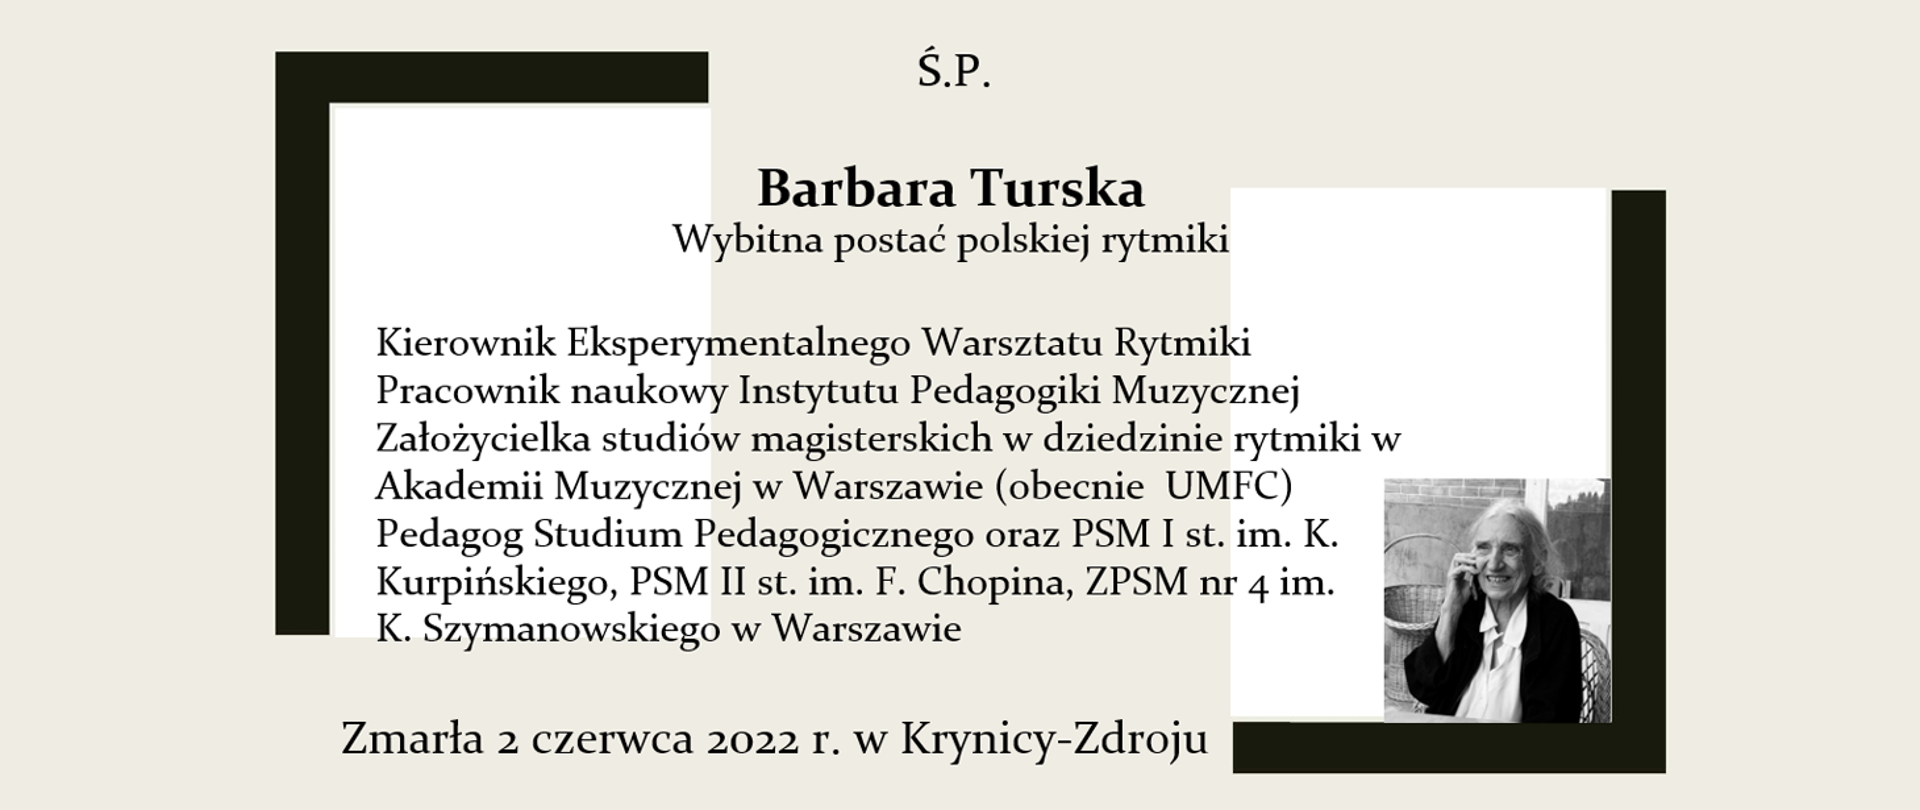 Grafika na szarym tle w formie nekrologu informująca o śmierci wybitnej postaci polskiej rytmiki Barbary Turskiej